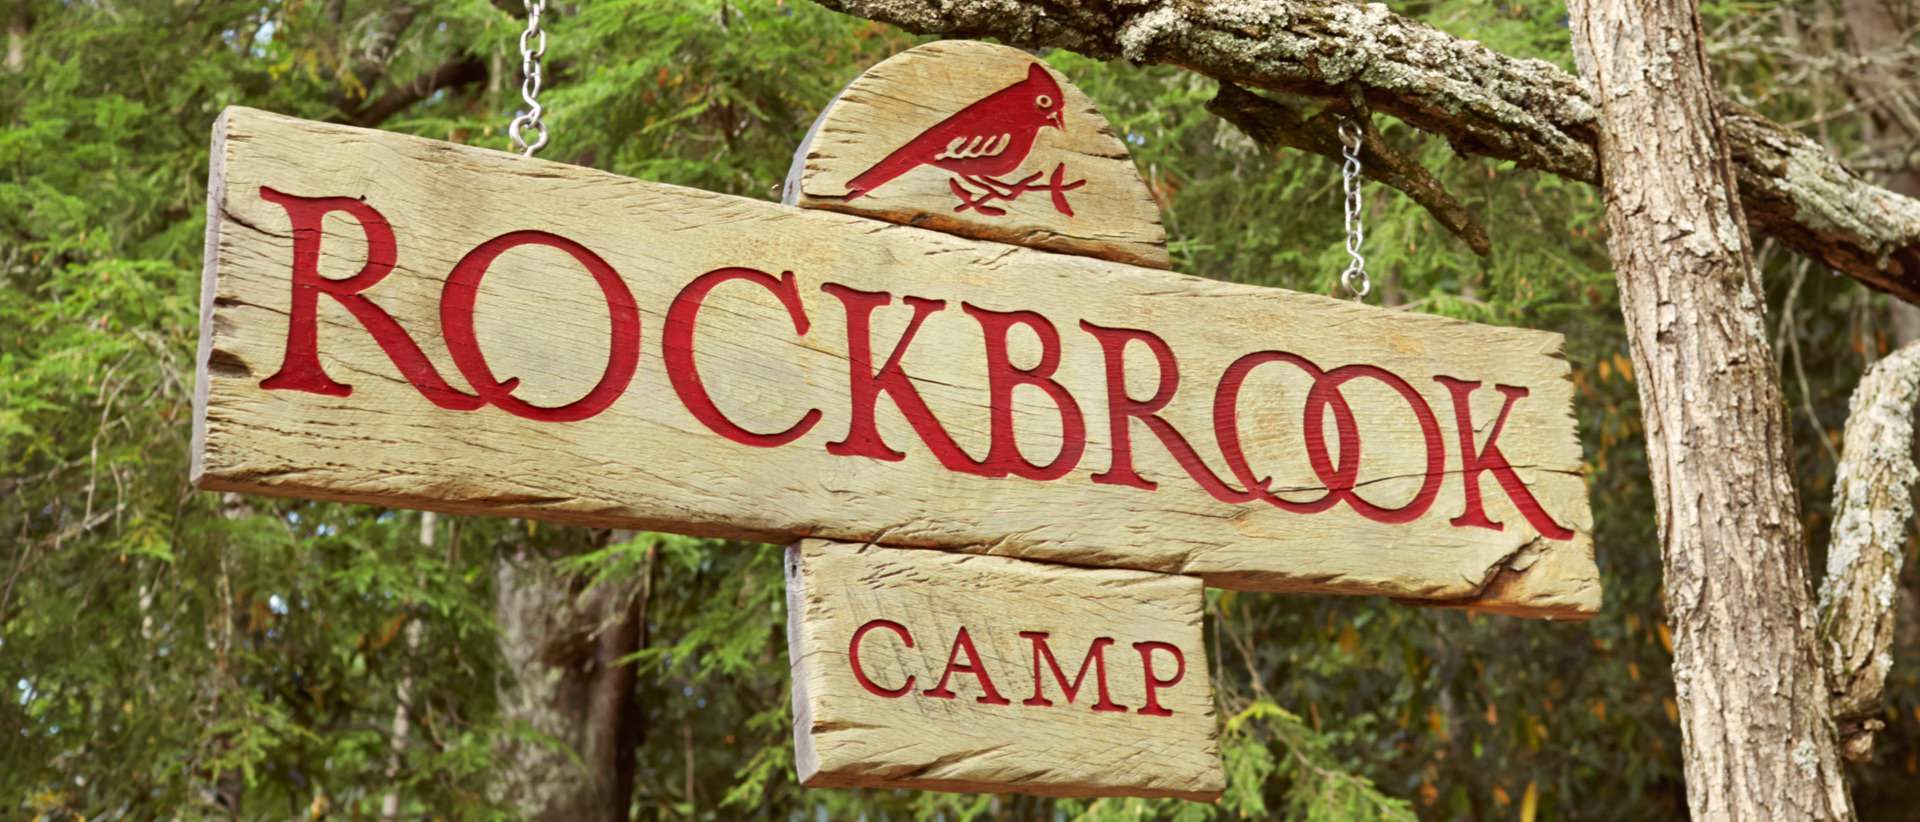 Camp Rockbrook Entrance Sign